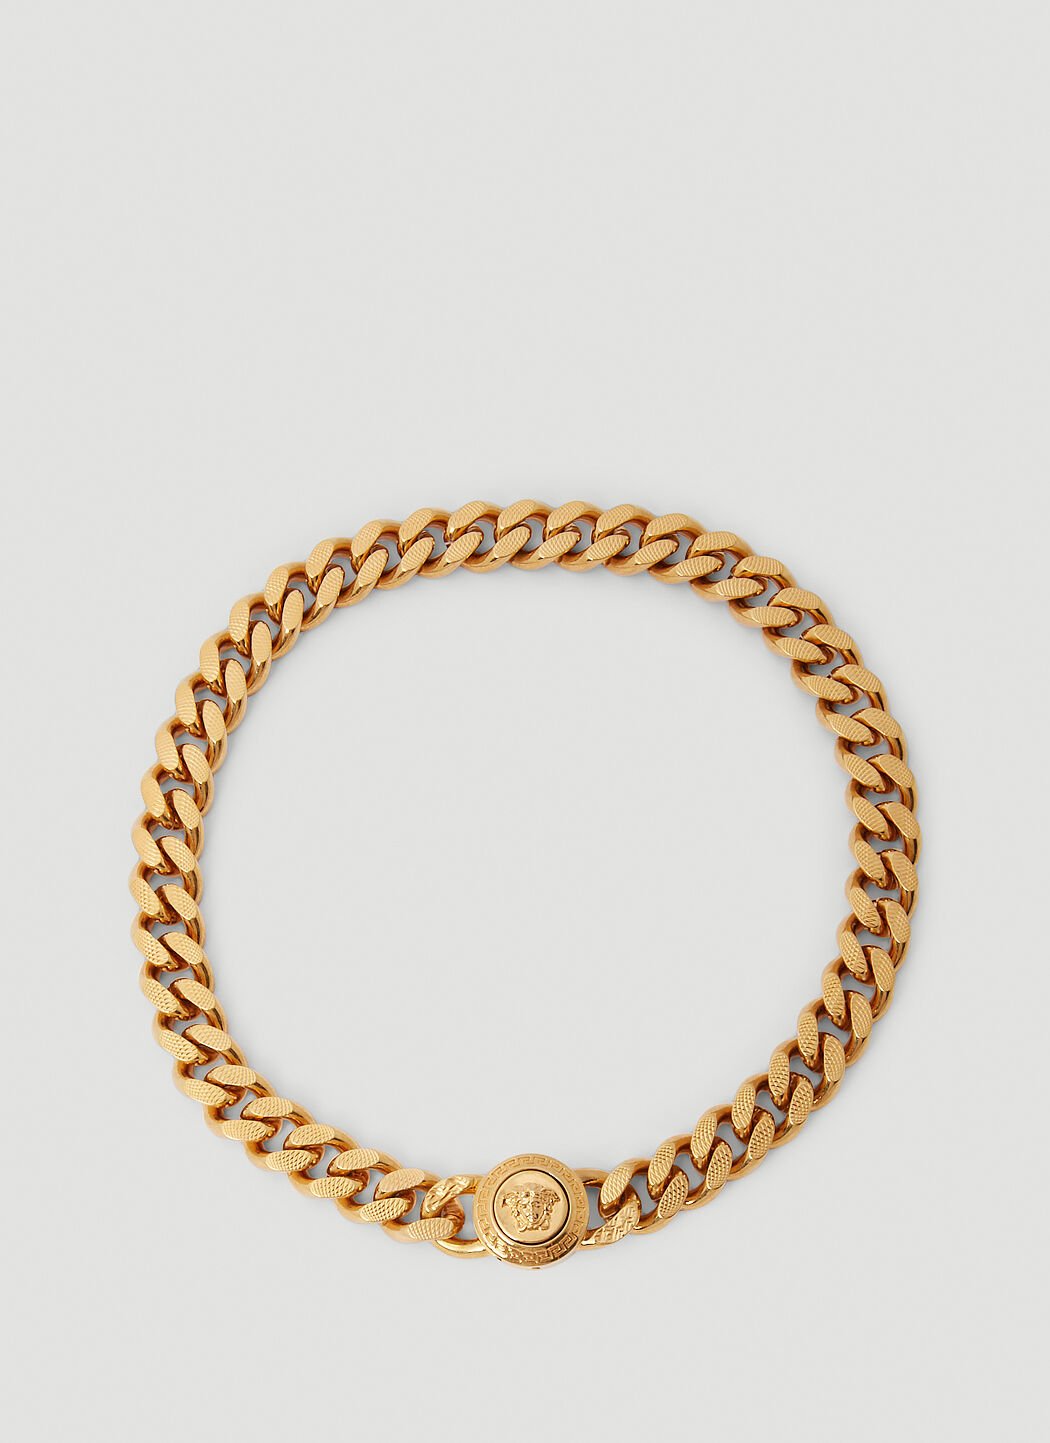 Versace Medusa 链环项链 金色 ver0155041